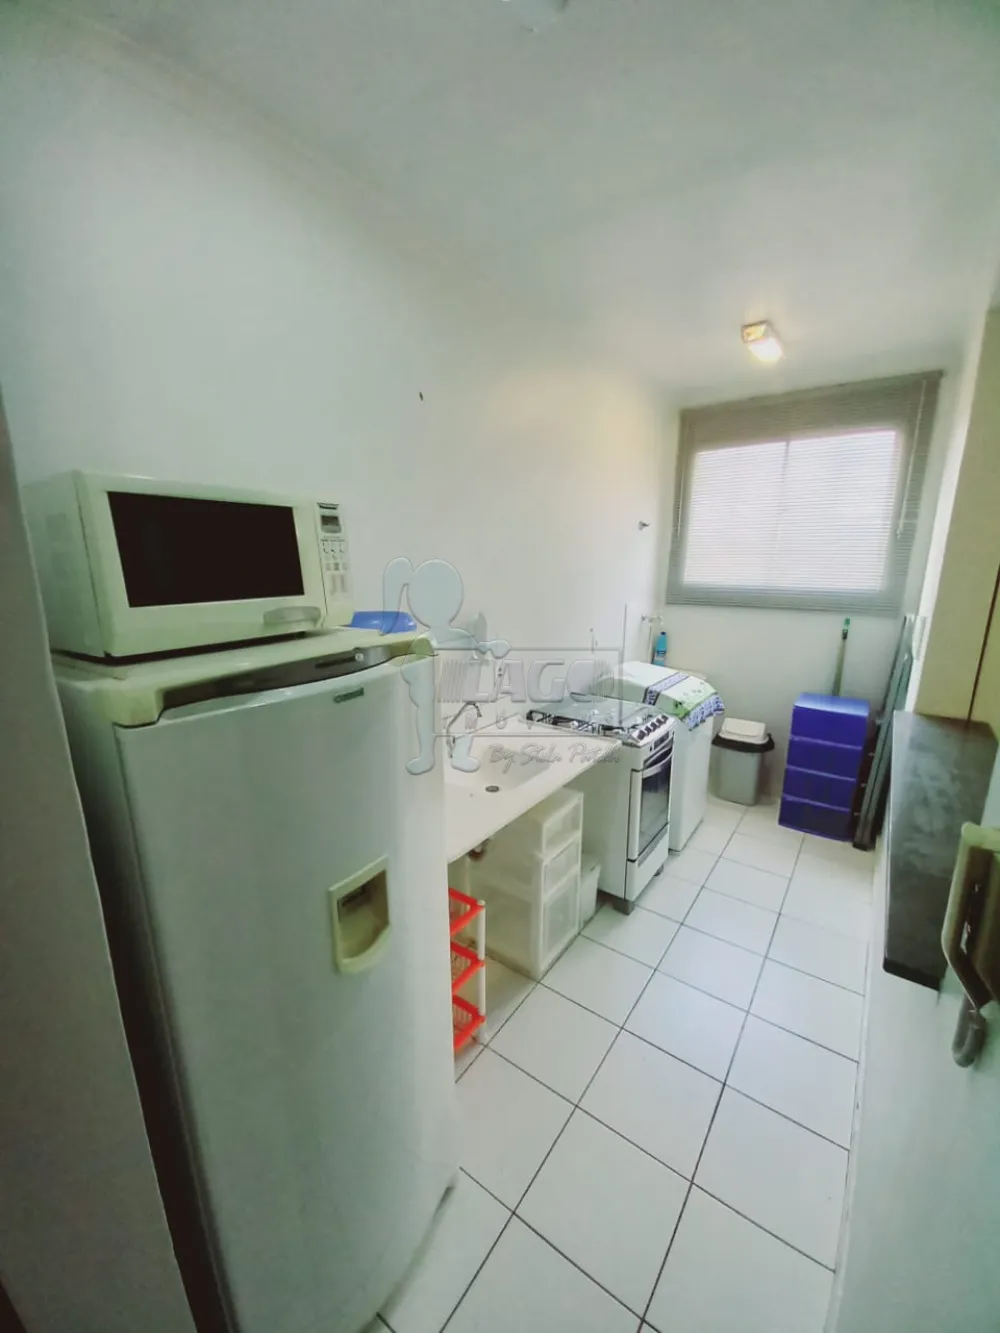 Alugar Apartamentos / Studio/Kitnet em Ribeirão Preto R$ 750,00 - Foto 5